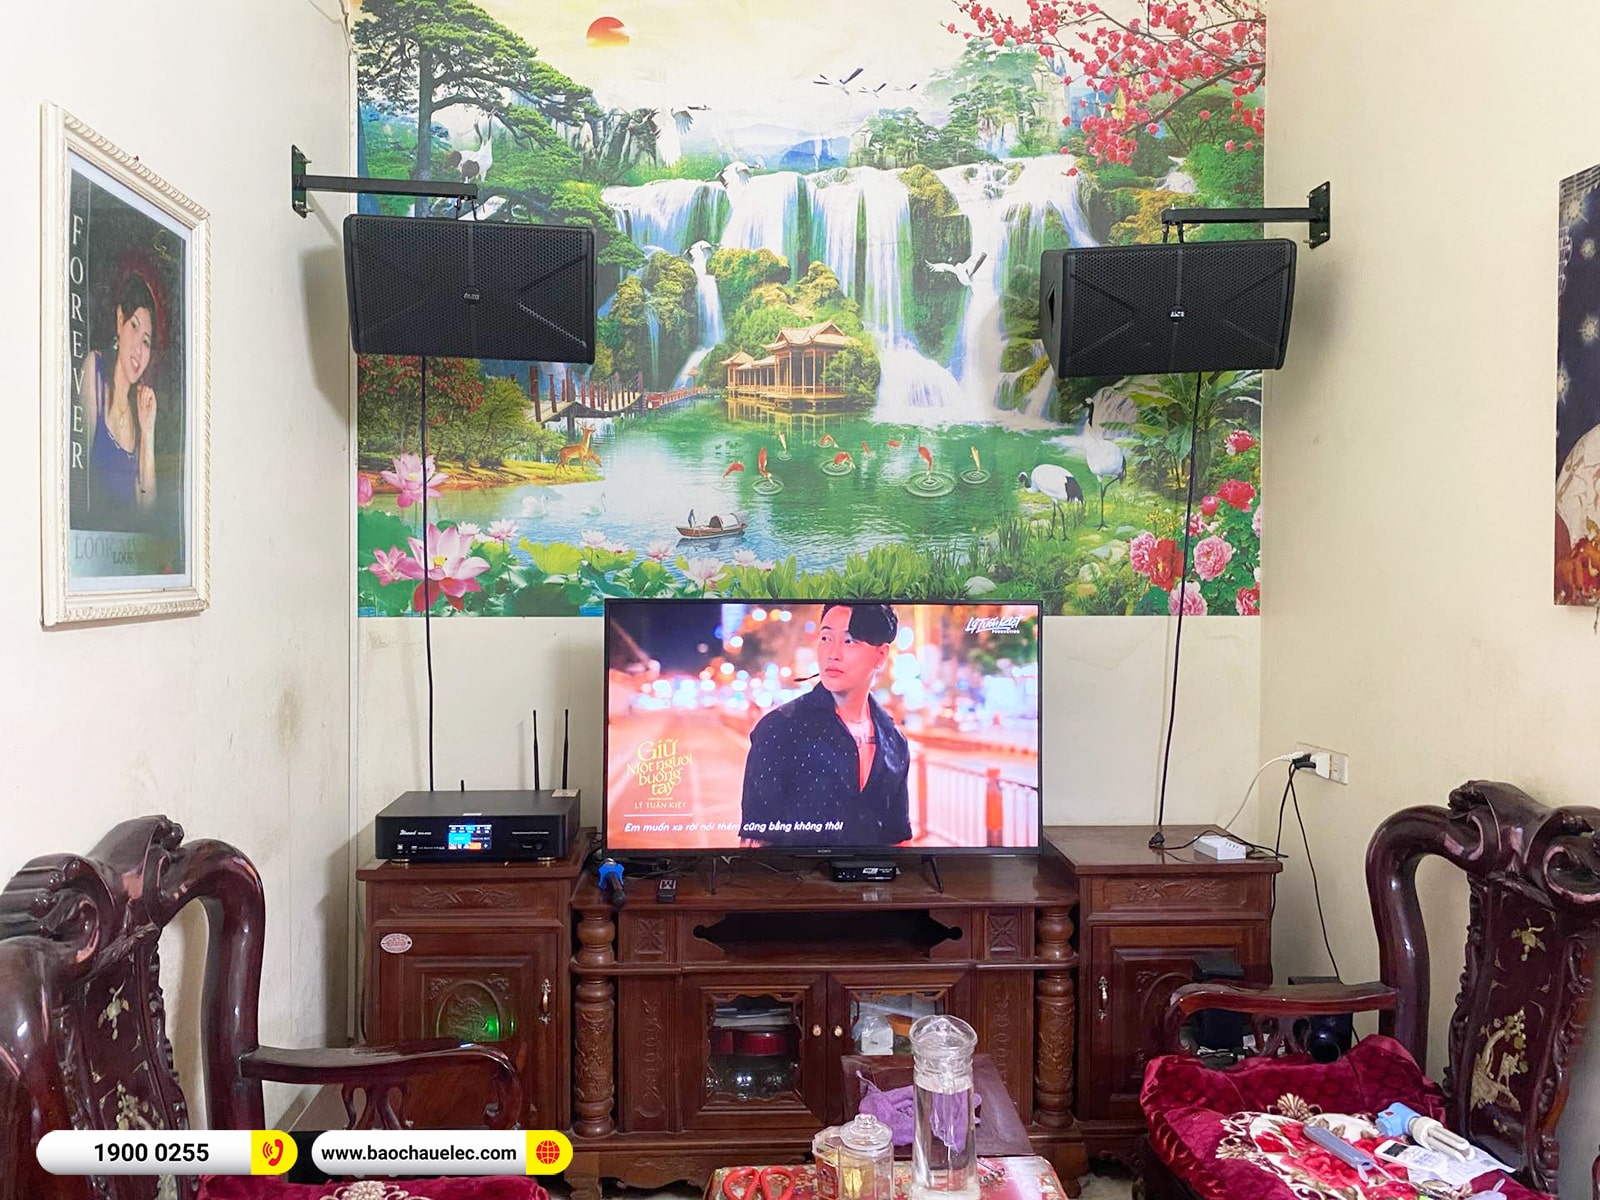 Lắp đặt dàn karaoke Alto hơn 23tr cho anh Hà tại Nam Định (Alto AT1000II, BKSound DKA 6500, BKSound SW512)